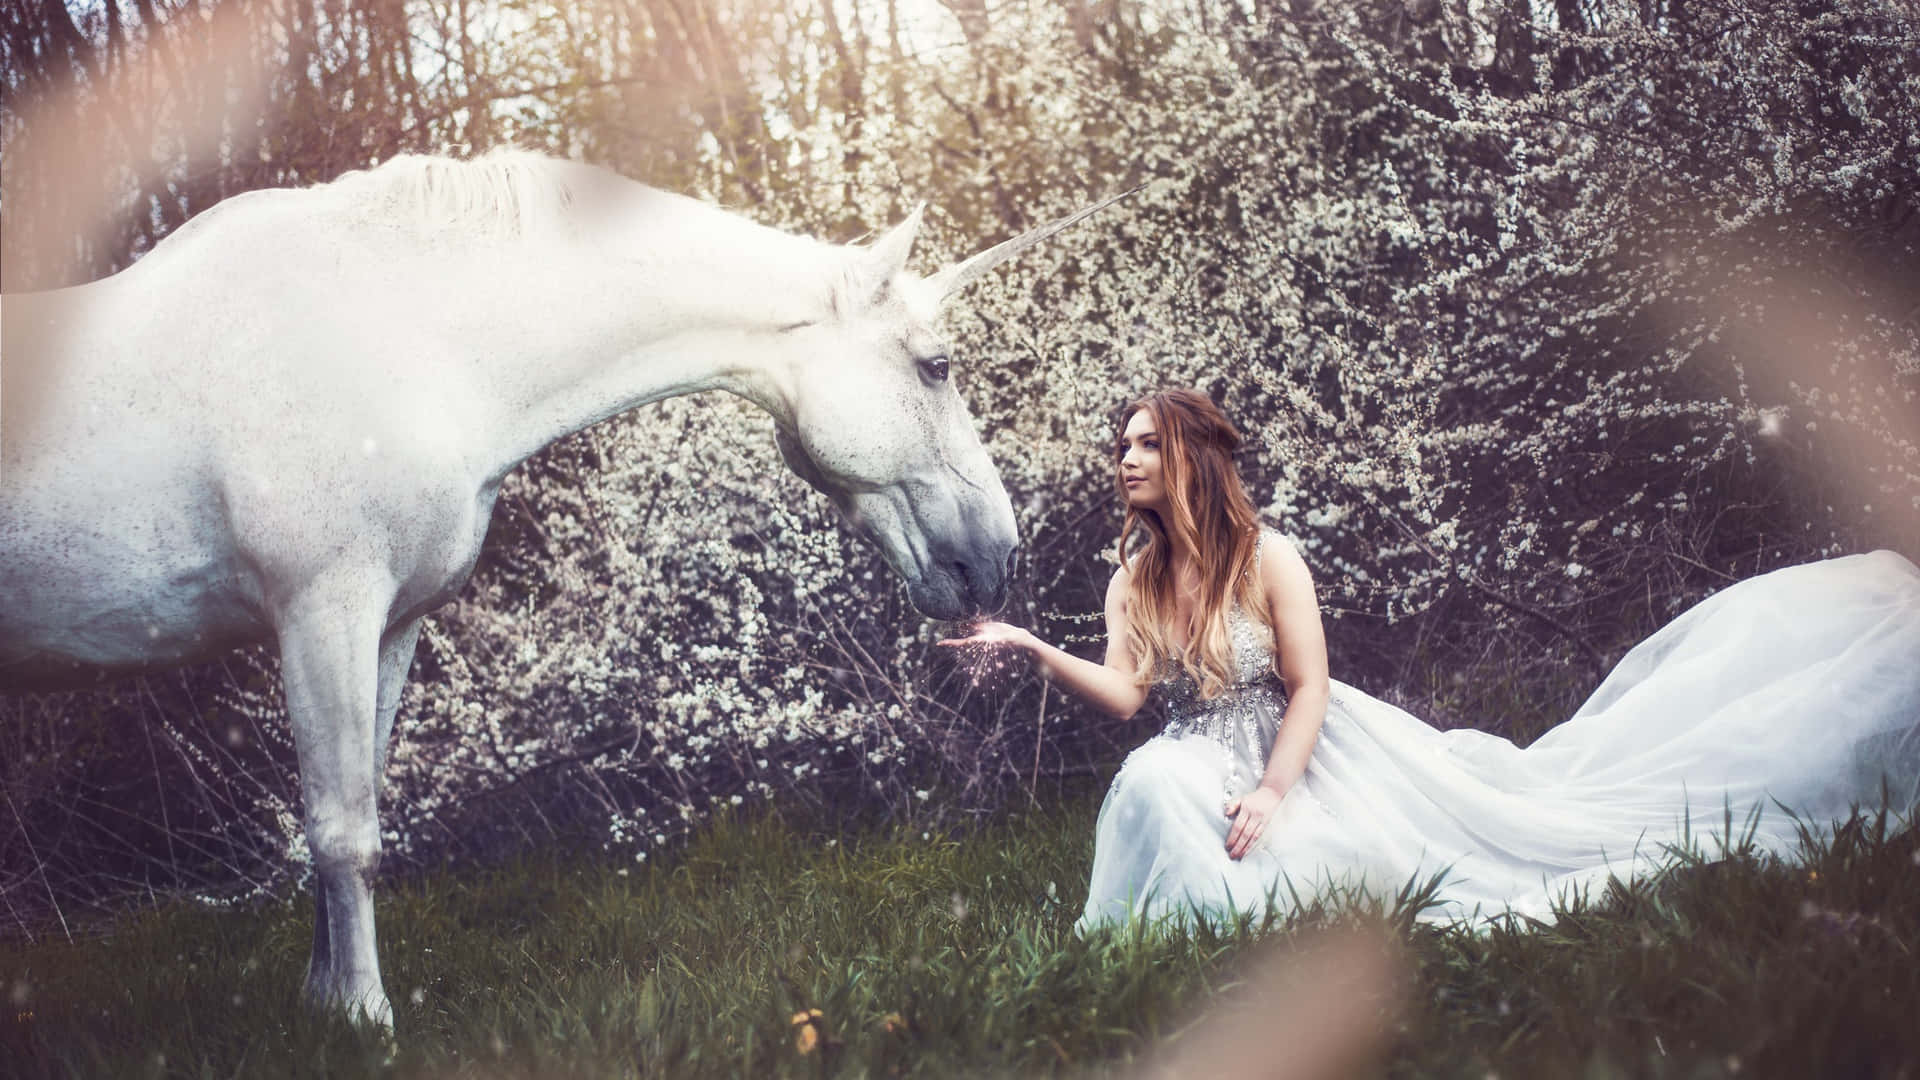 A Woman In A White Dress Petting A White Unicorn